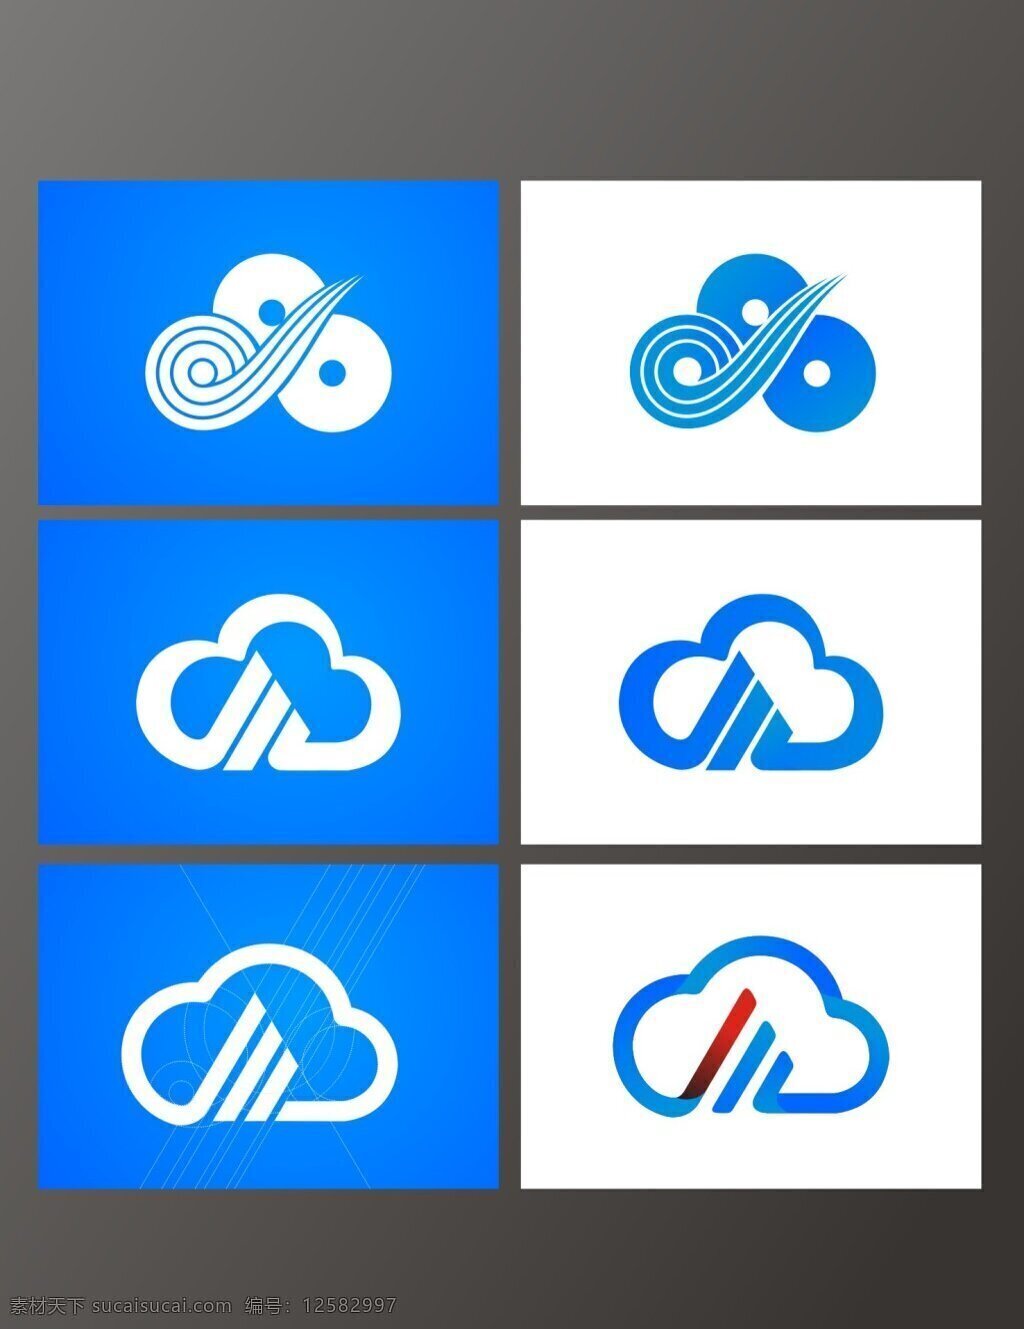 互联网 教育 课程 云翔 app logo 云 创意设计 logo设计 弦 白色